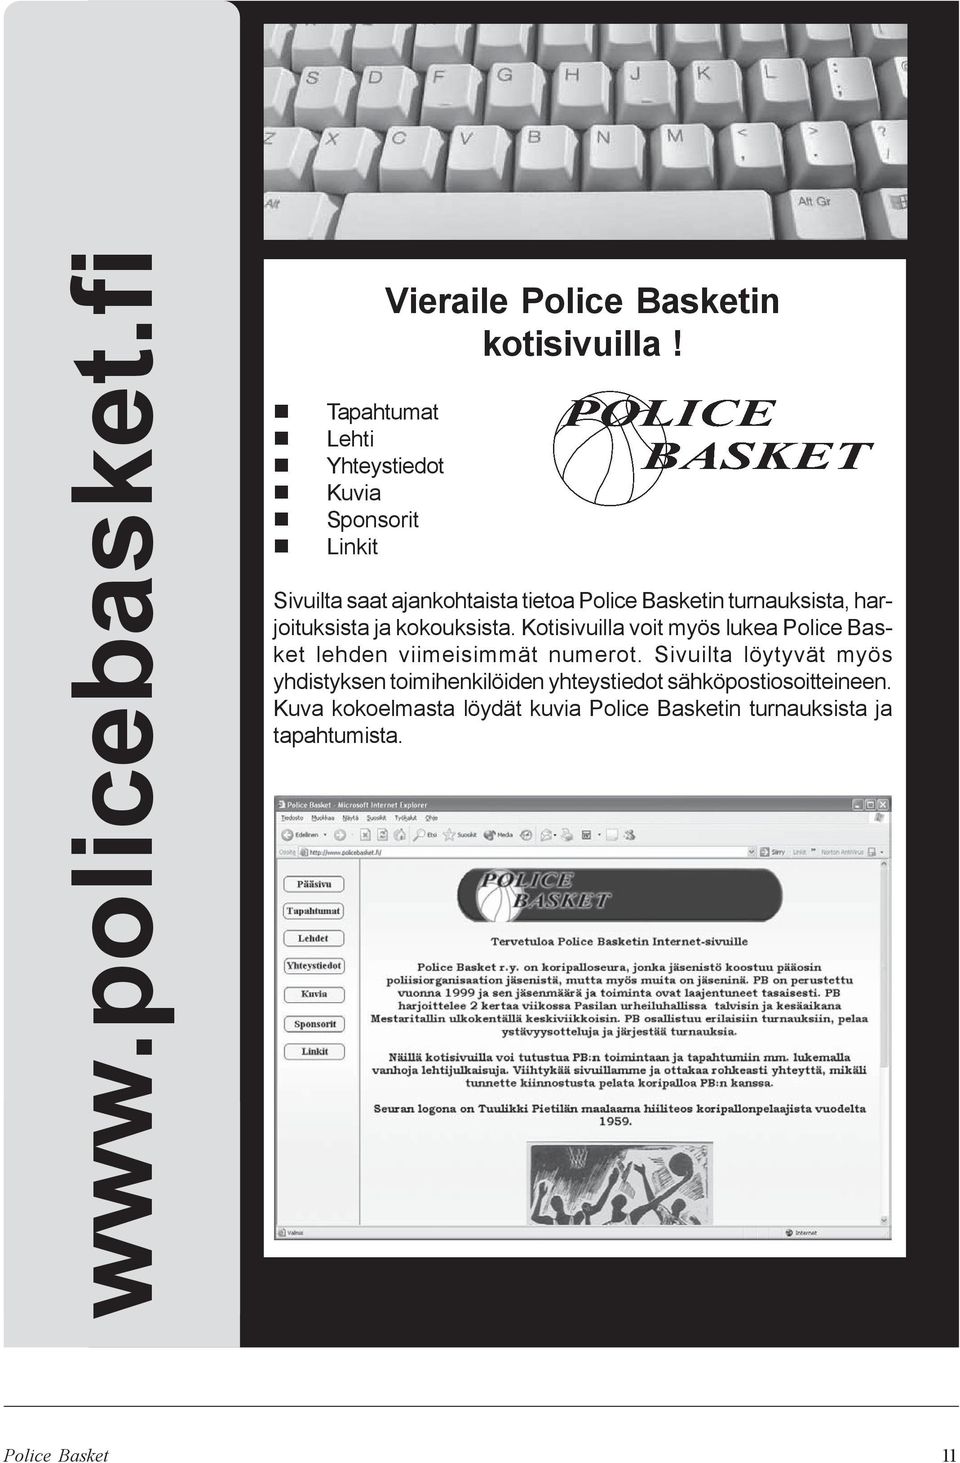 Kotisivuilla voit myös lukea Police Basket lehden viimeisimmät numerot.